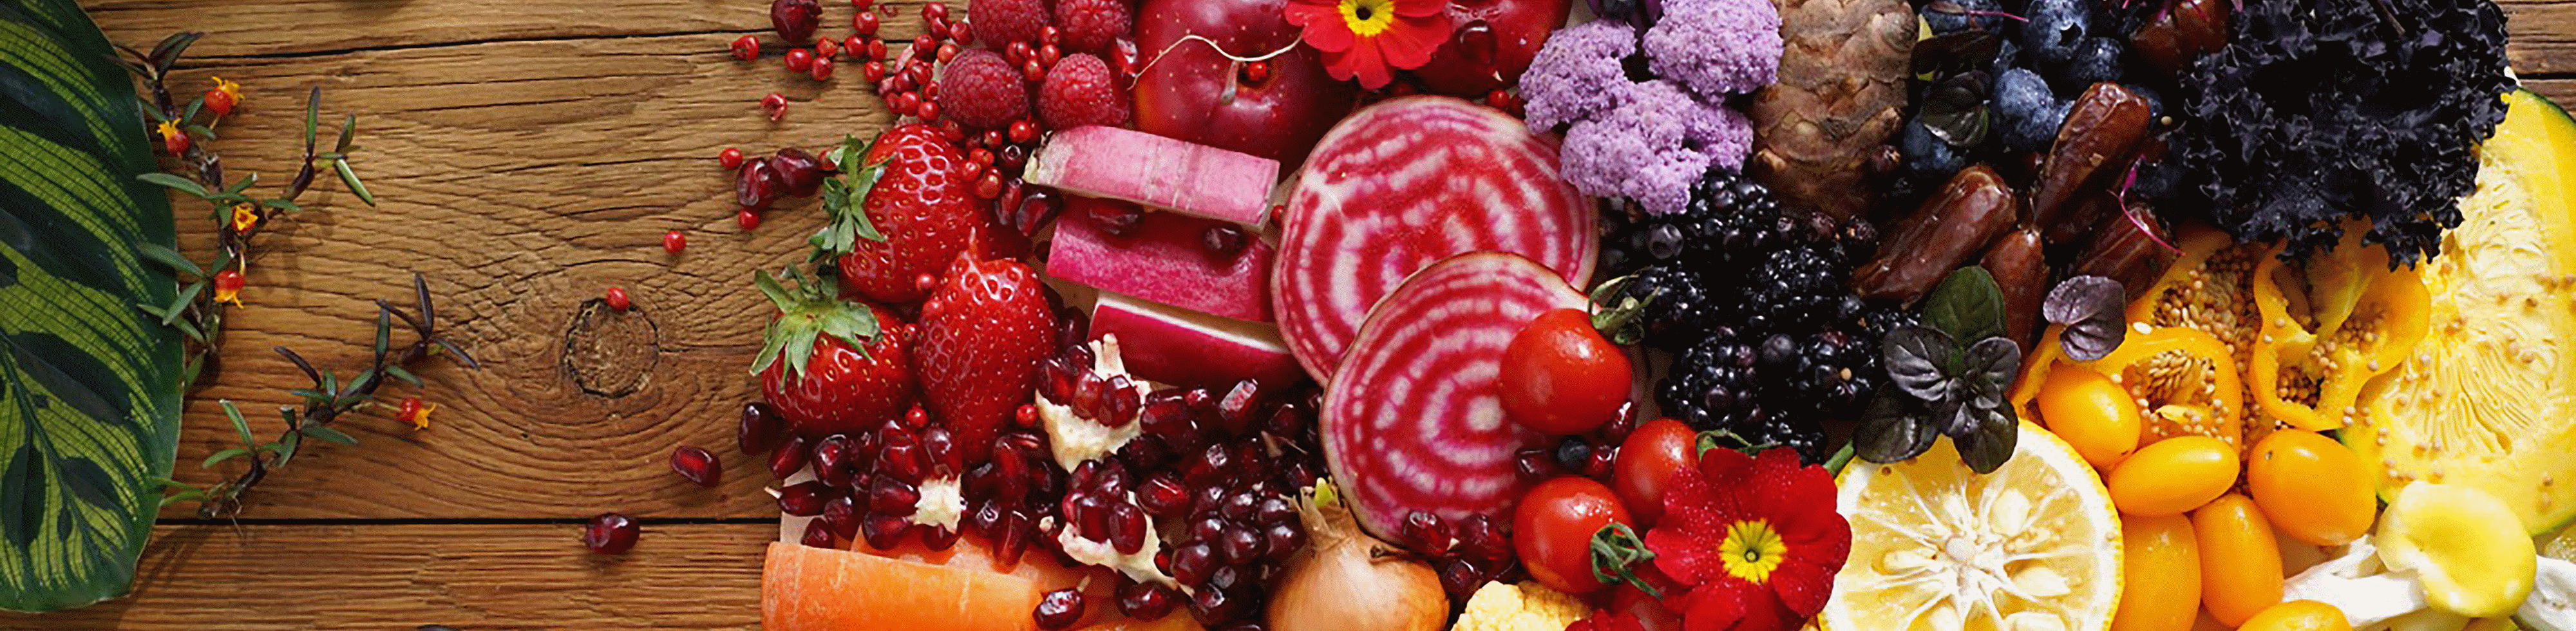 Image de légumes et de fruits colorés prise avec cet objectif à haute résolution dans chaque coin